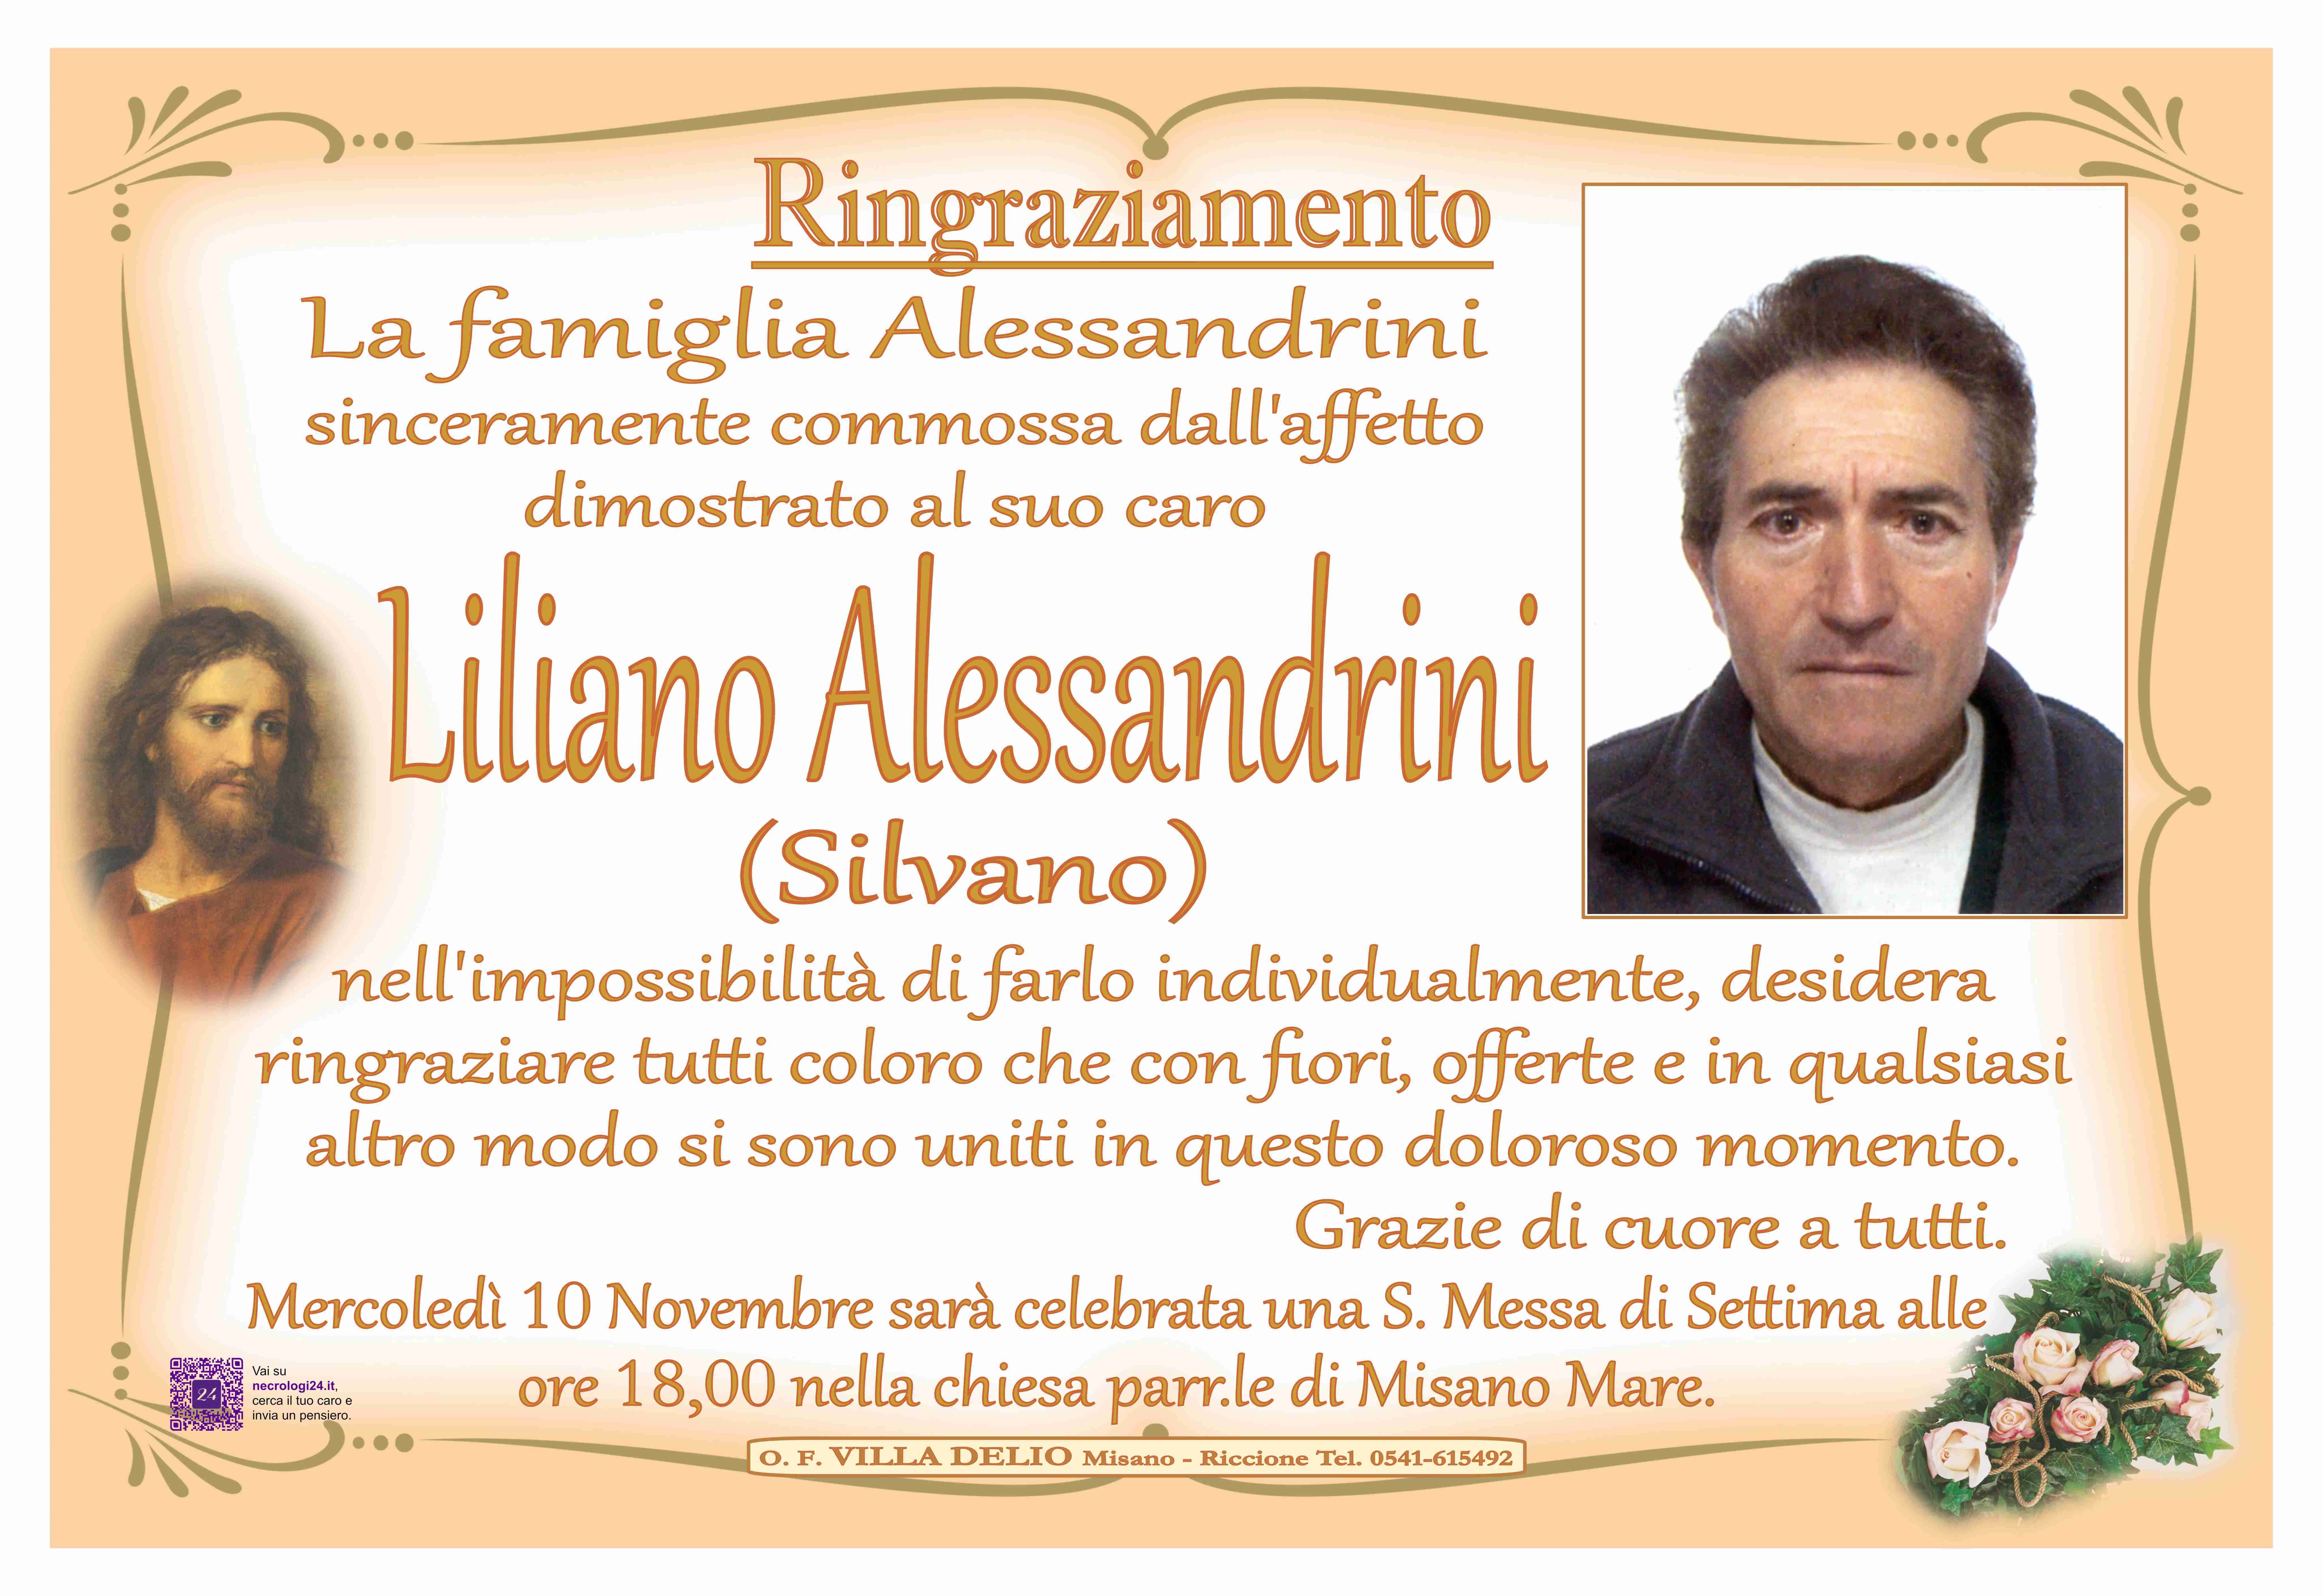 Liliano Alessandrini